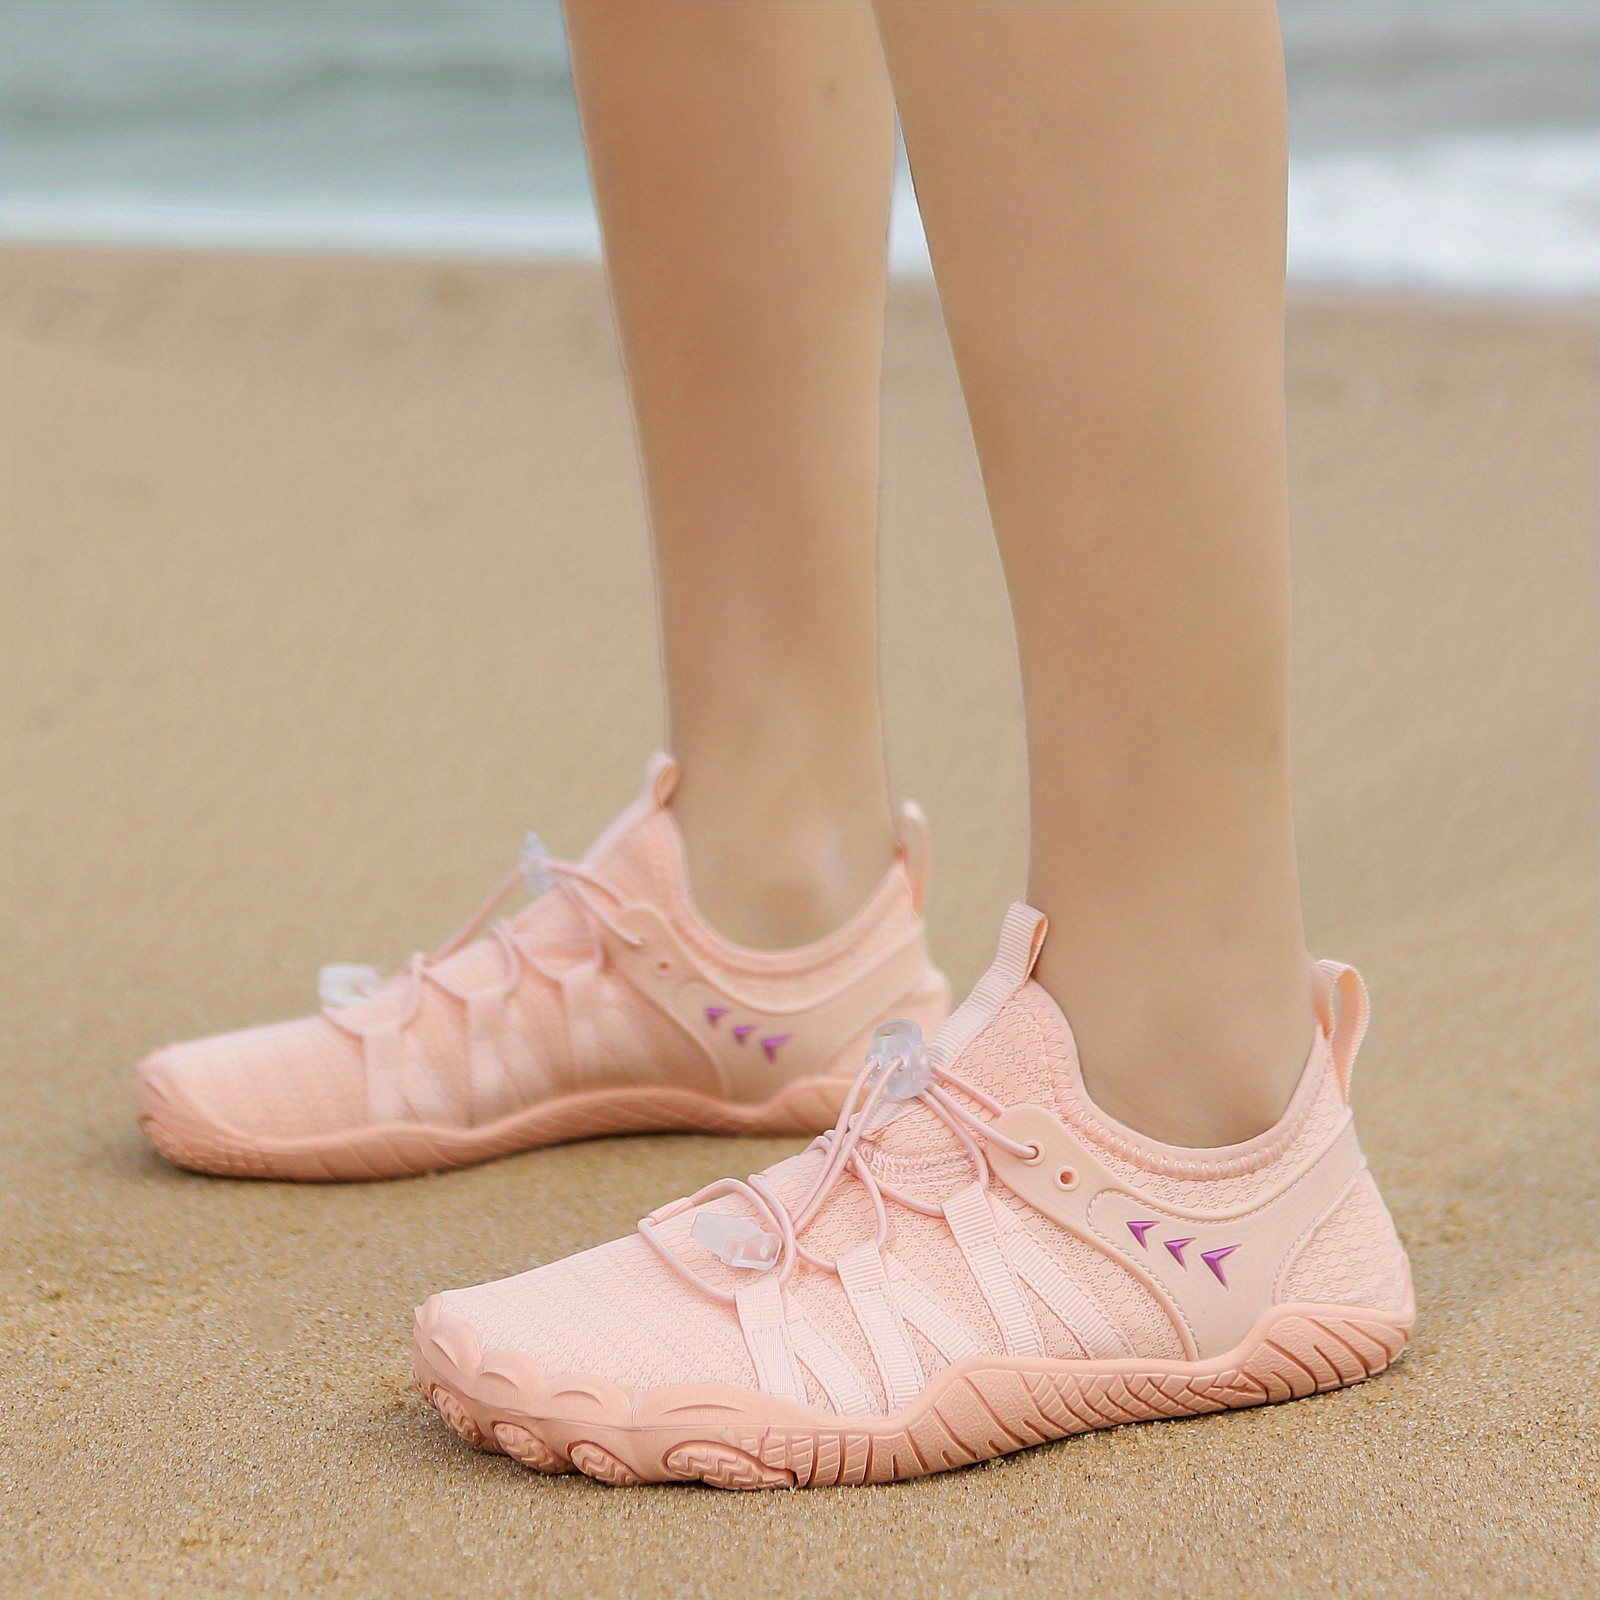 Mabove Zapatos descalzos para mujer, zapatos de playa, zapatos de